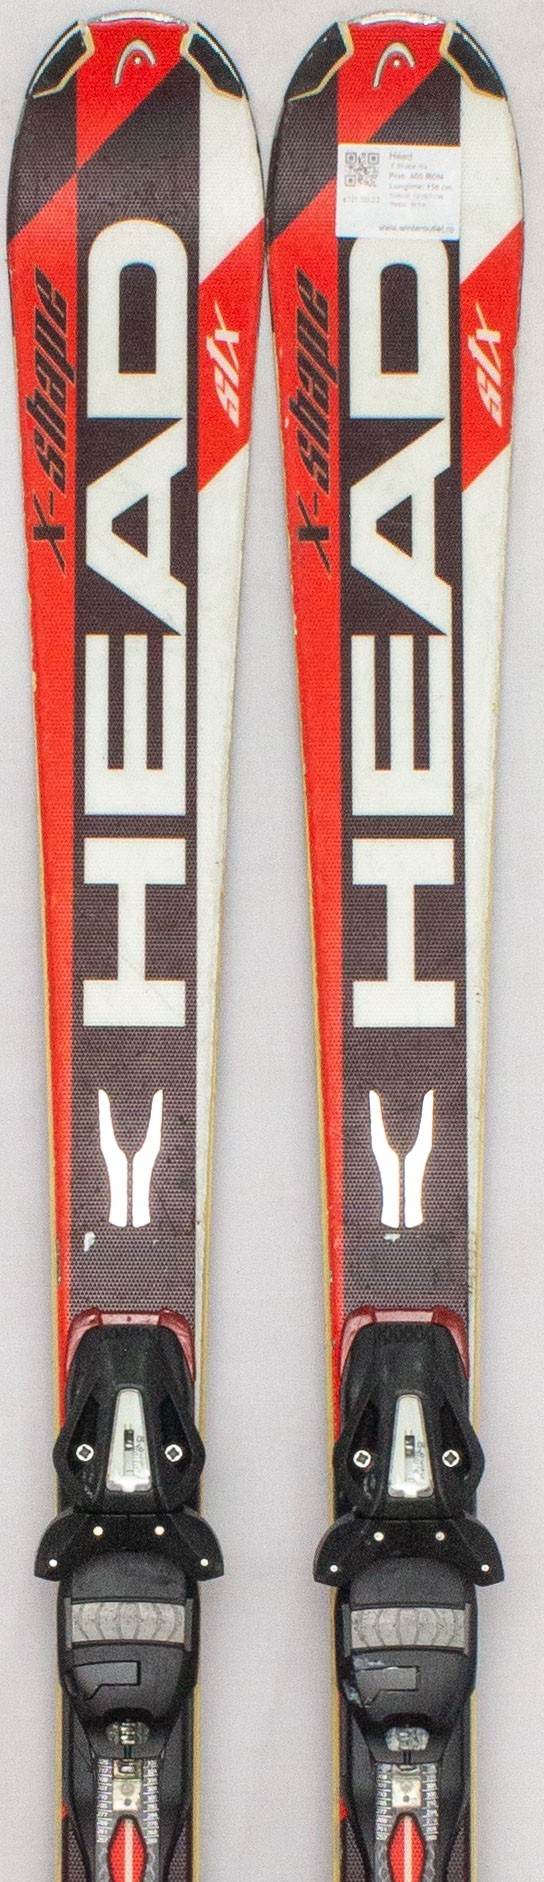 スキー板 head X-shape six 163cm - スキー